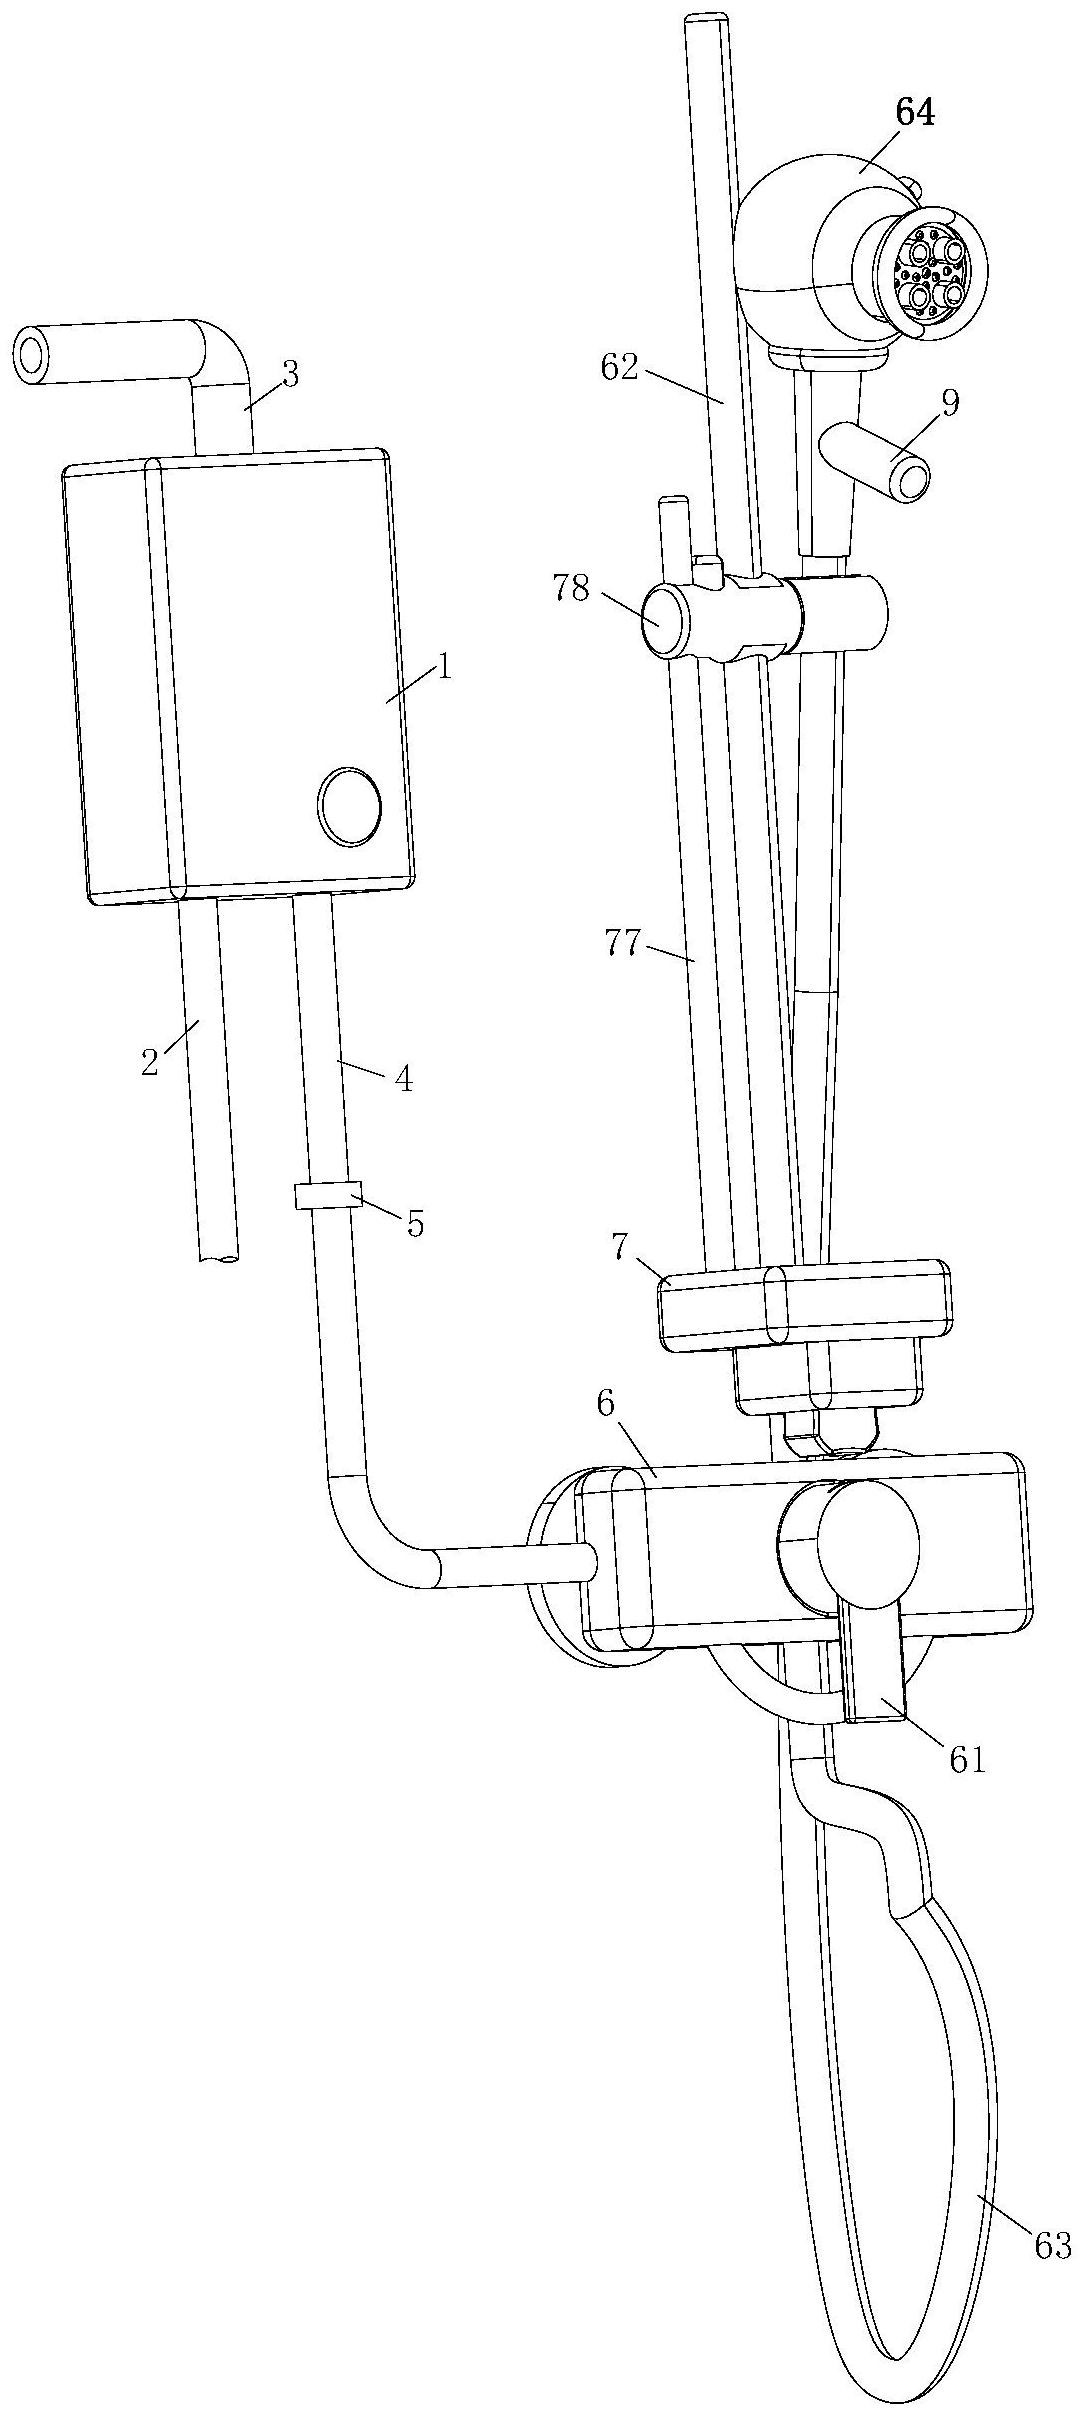 一种燃气热水器-专利